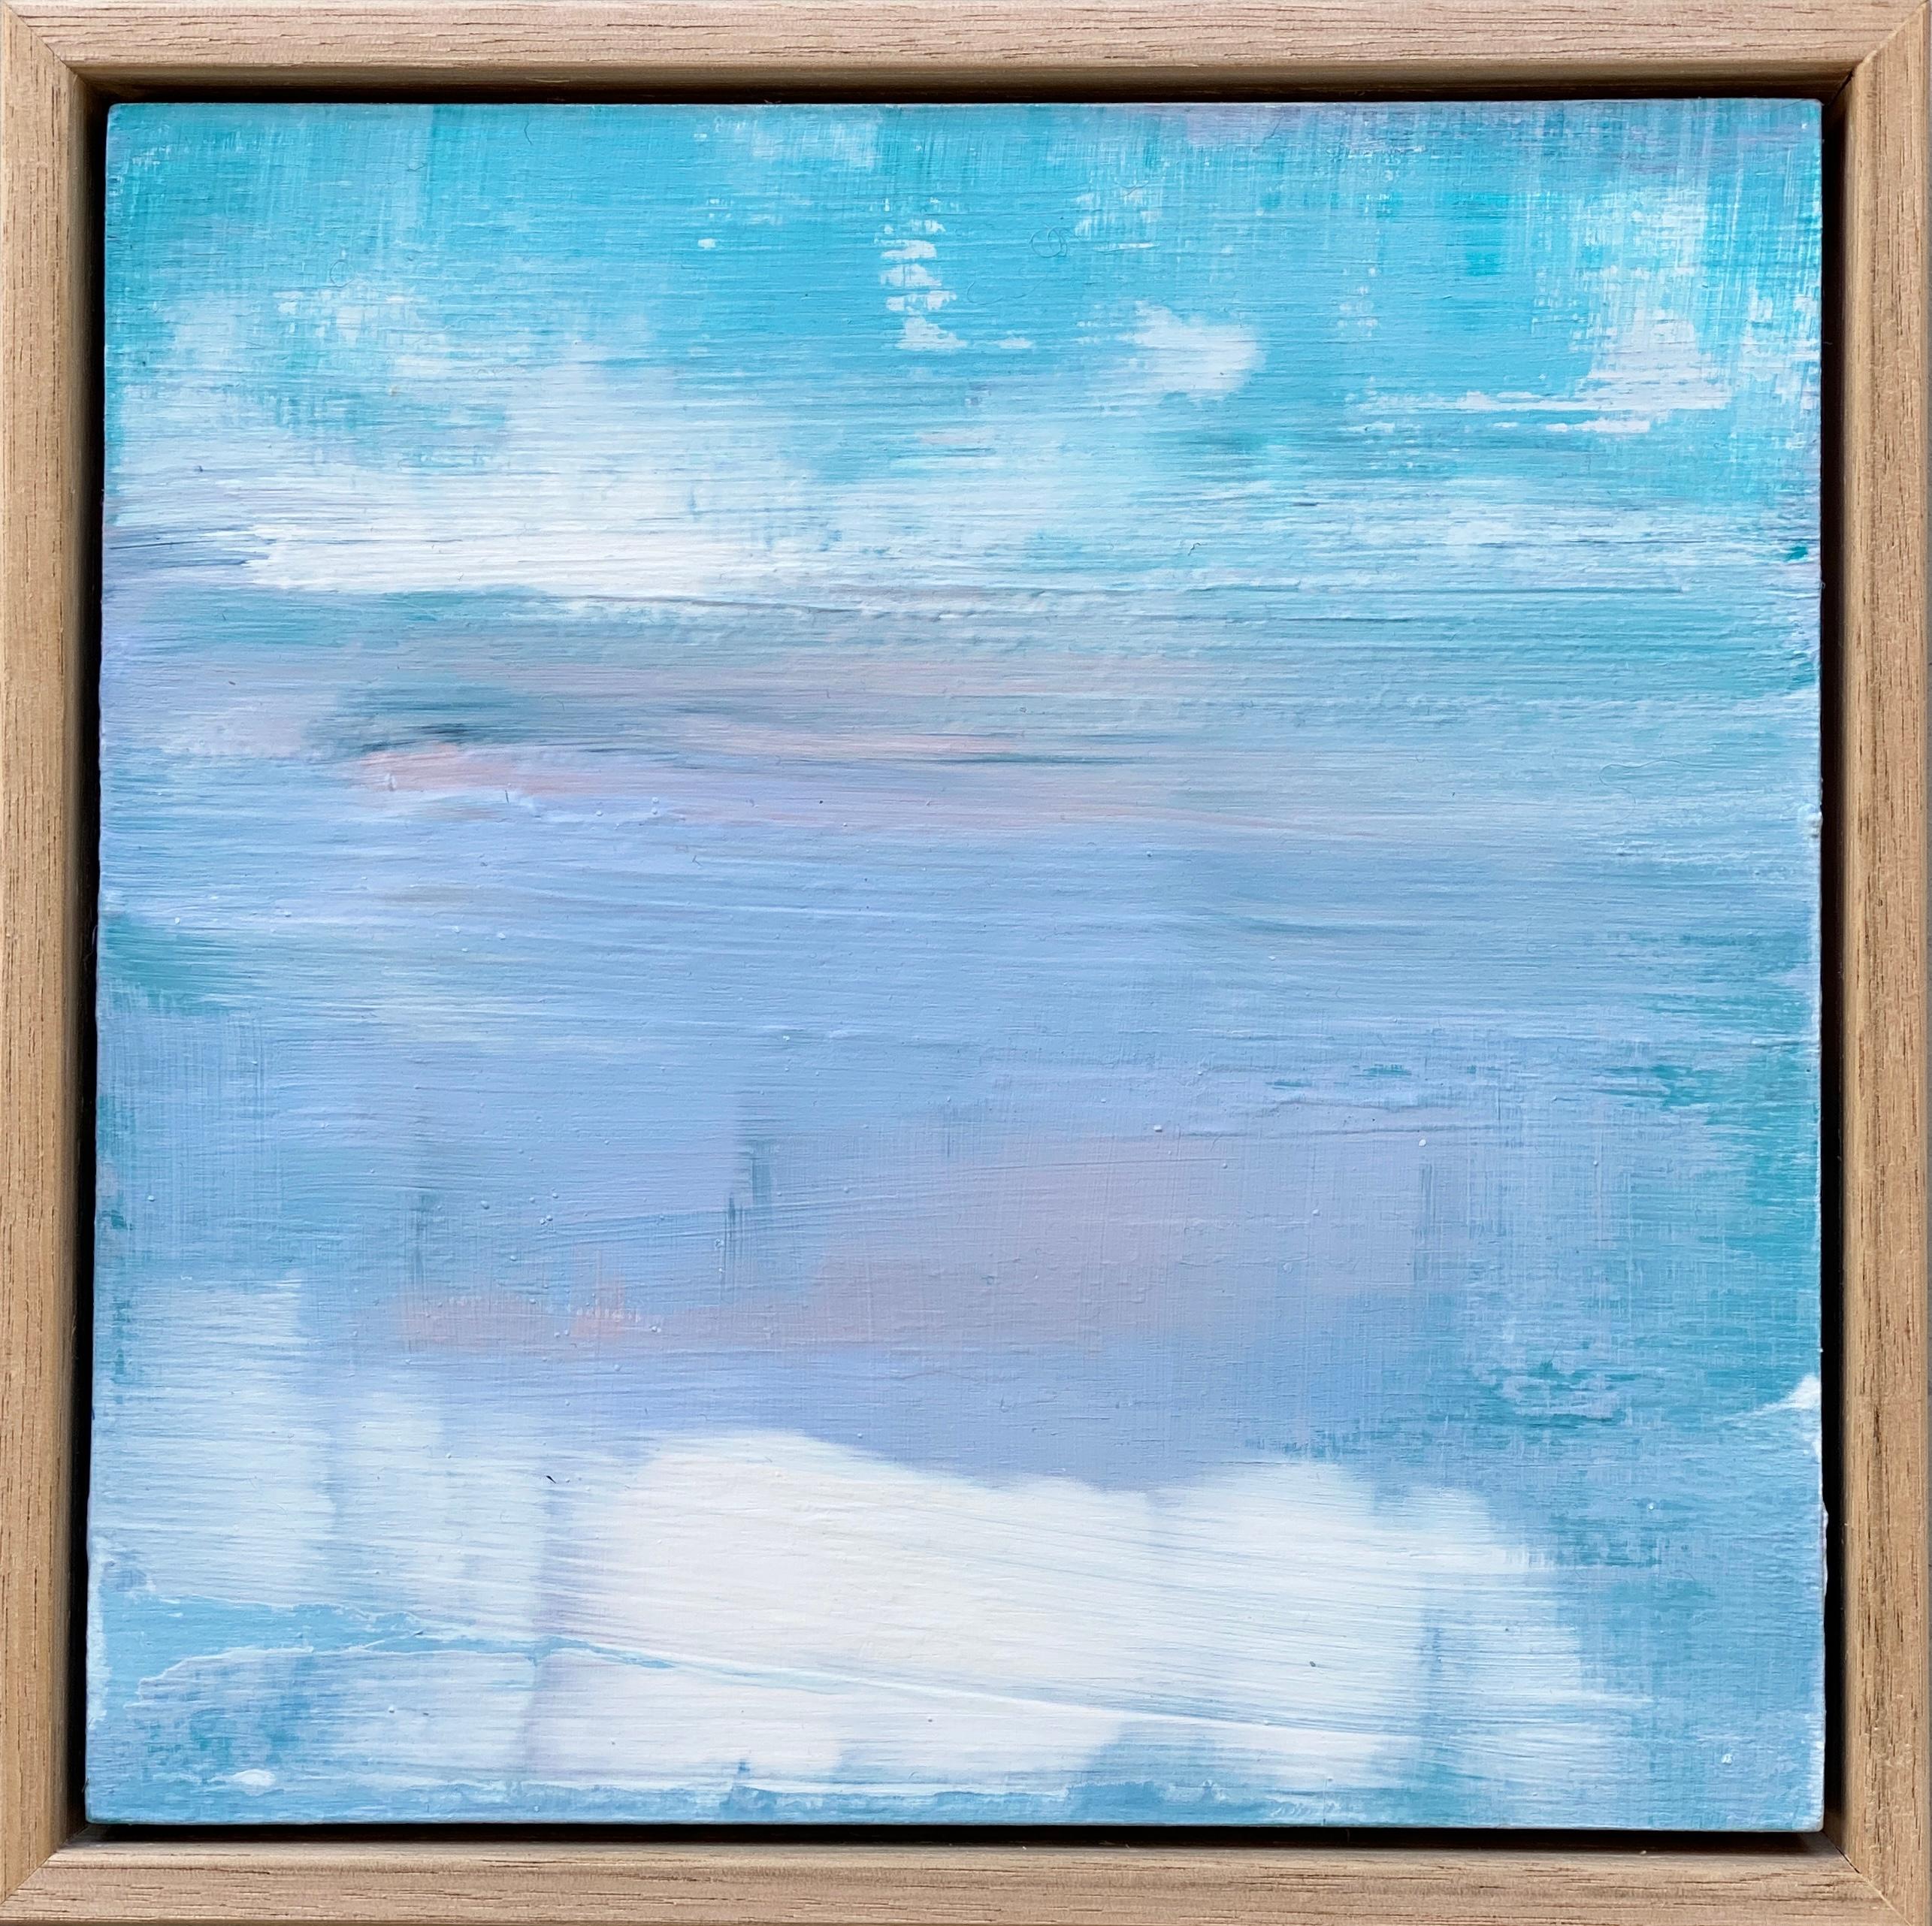 Abstract Painting Kathleen Rhee - Petit paysage impressionniste abstrait encadré bleu lilas et rose flottant